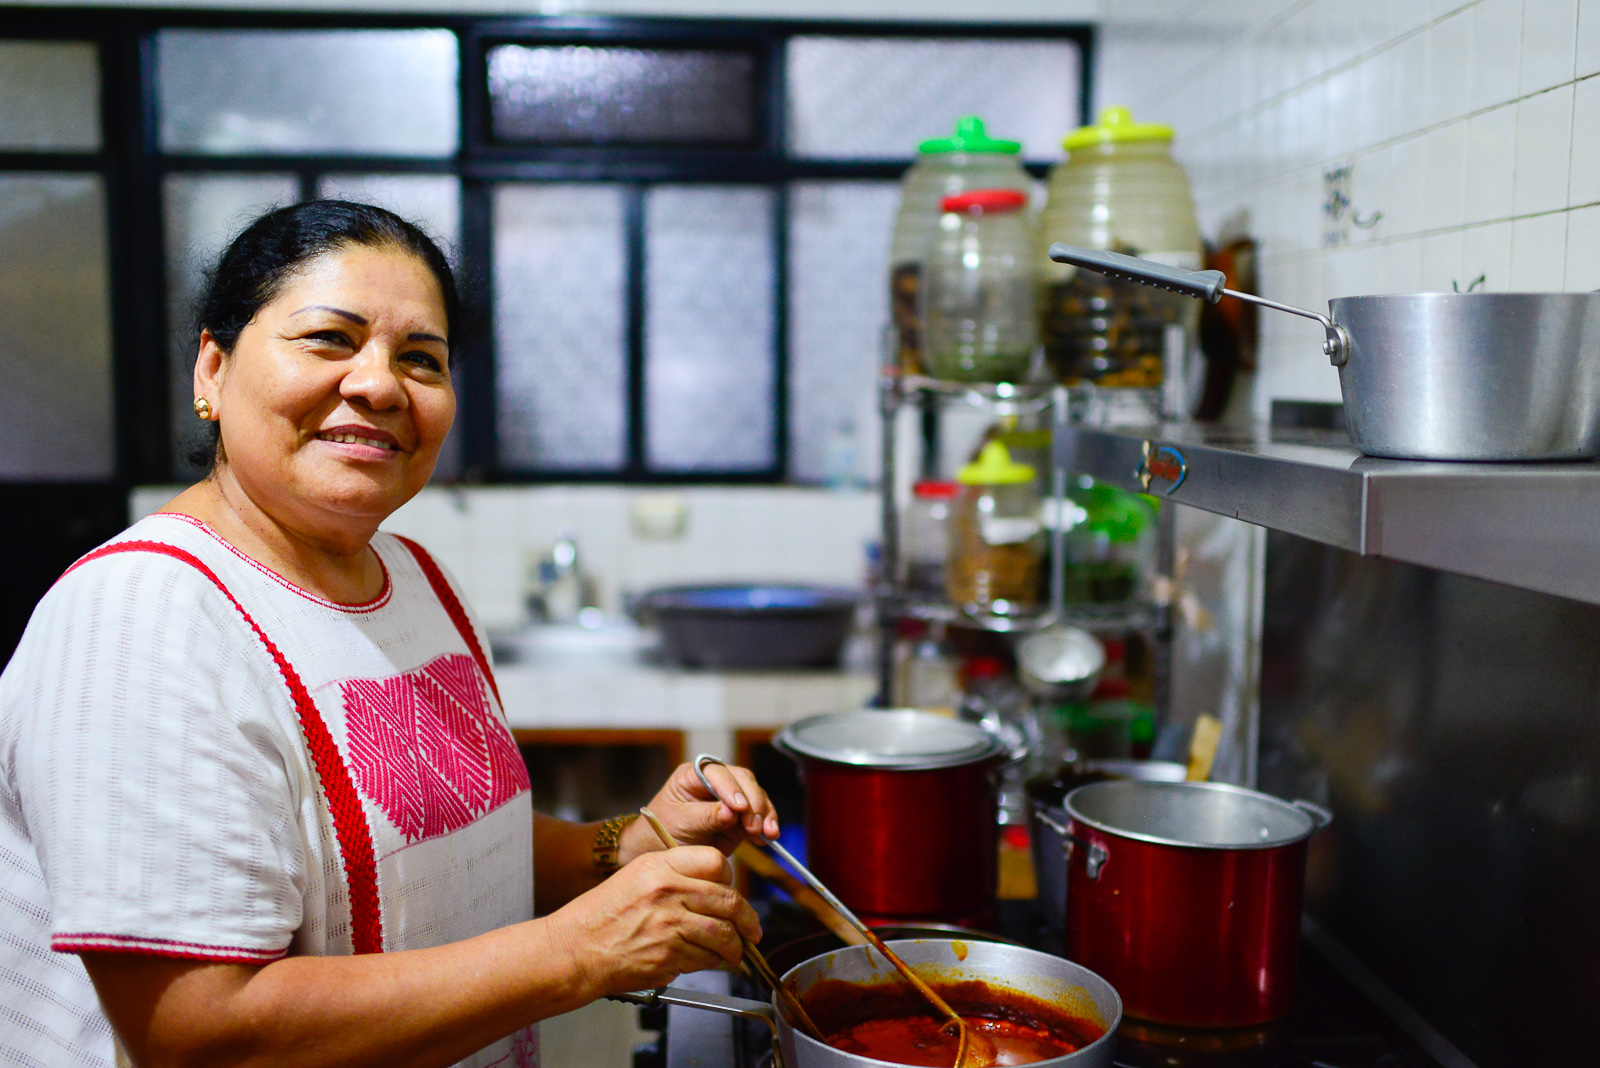 Señora Deyanira Aquino in her kitchen